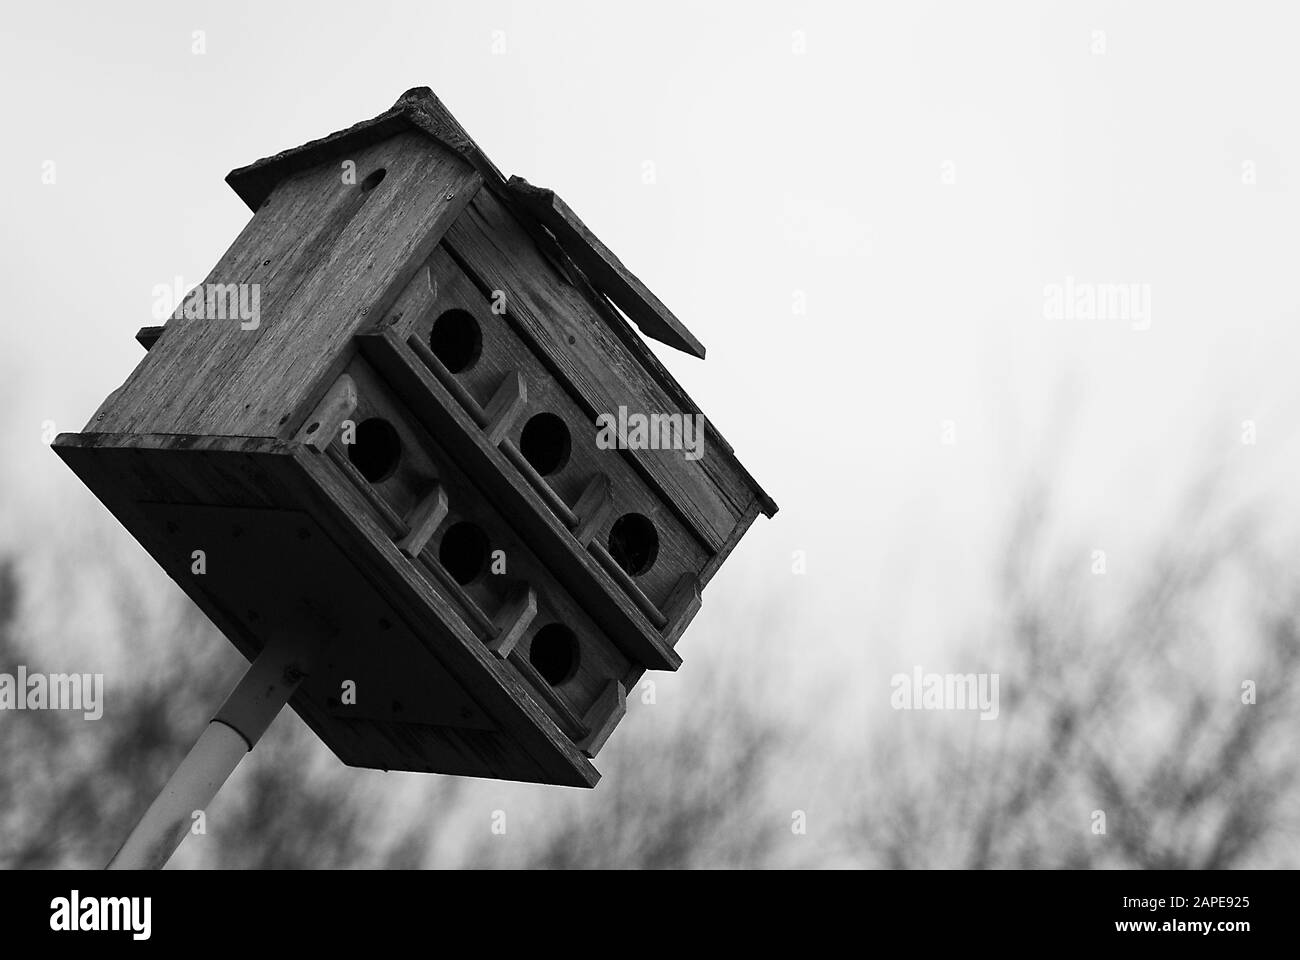 Nahaufnahme eines kleinen Holzhauses für Vögel In eine Richtung geneigt Stockfoto